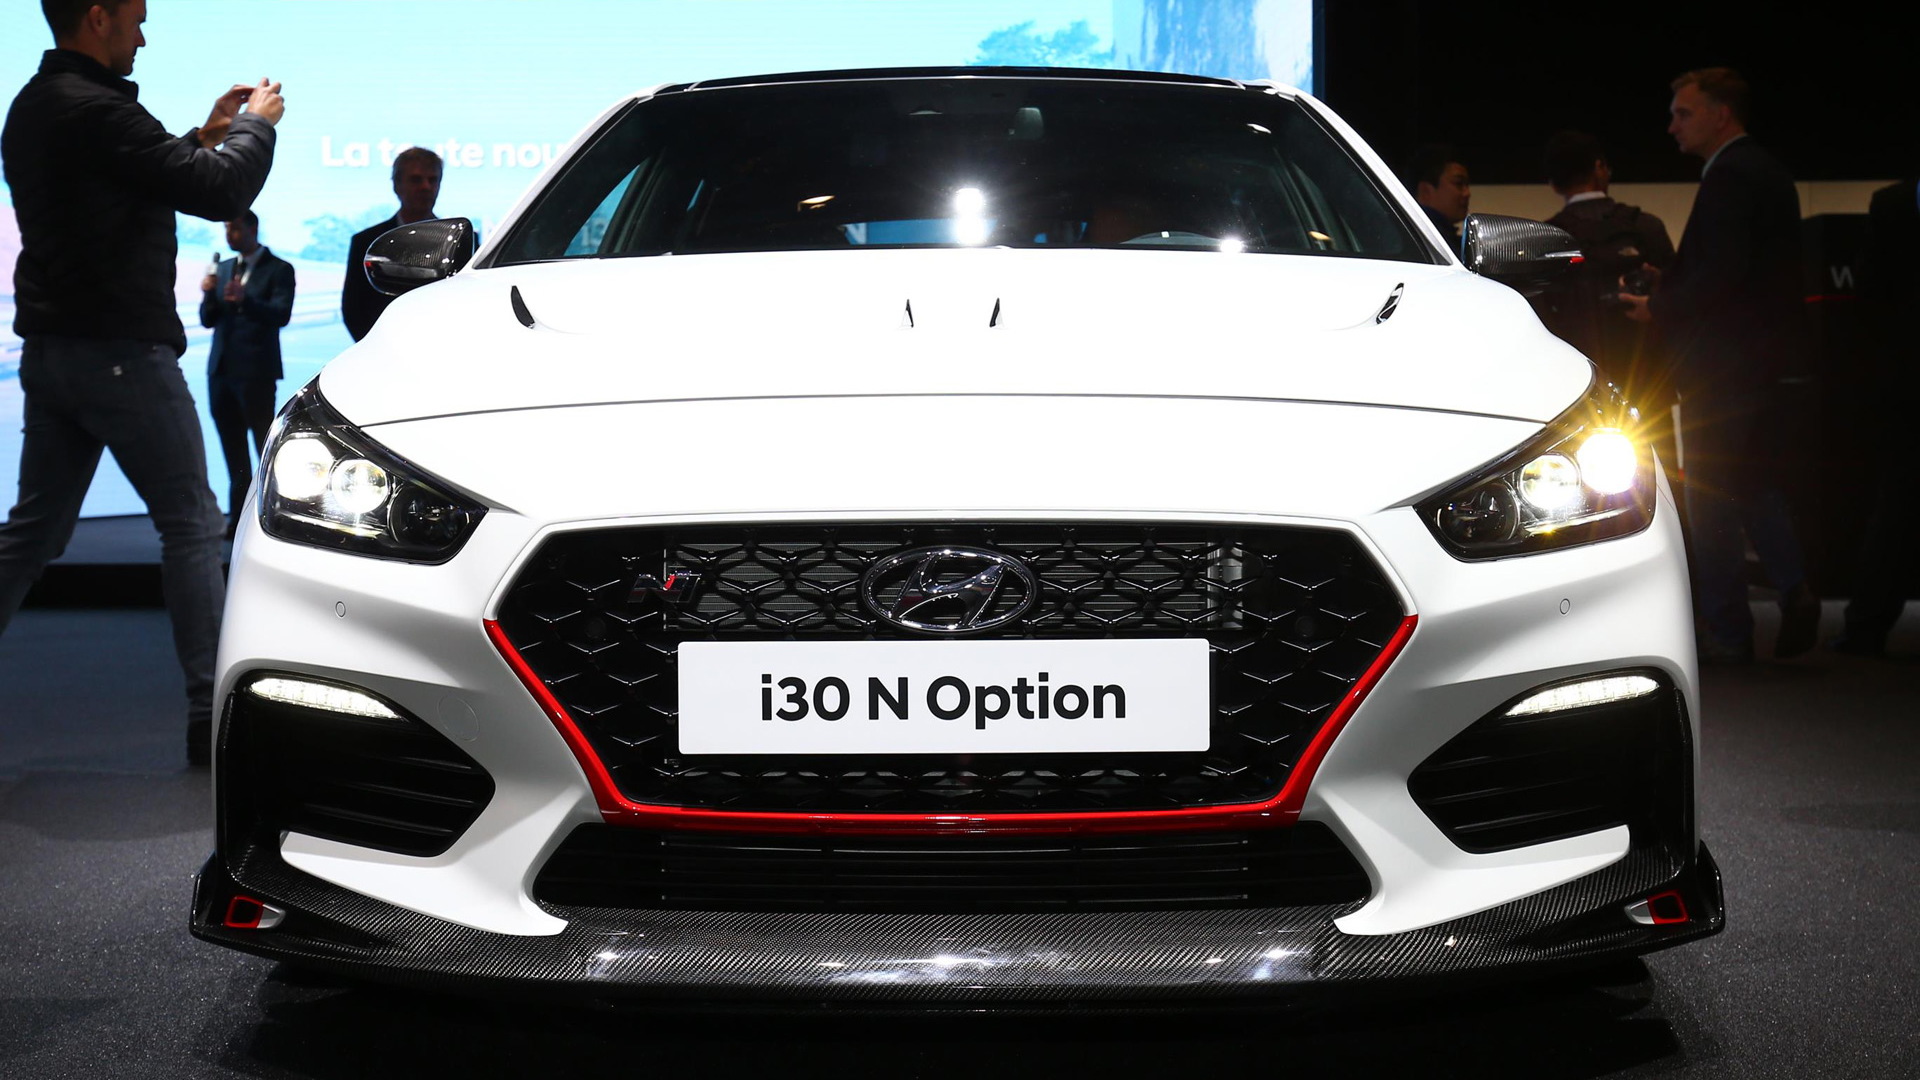 Hyundai i30 N Option concept, 2018 Paris auto show